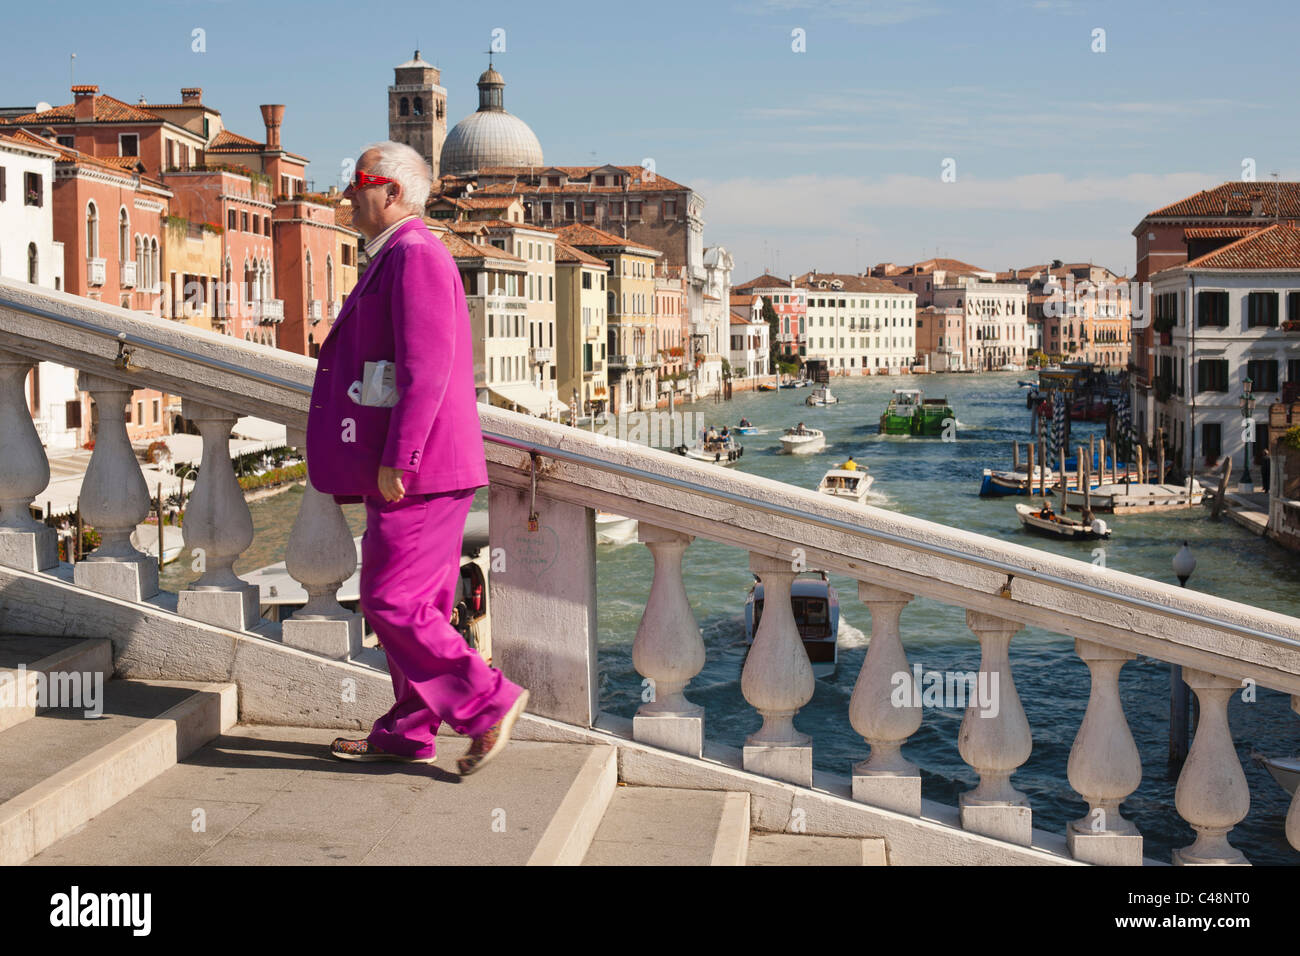 Un homme habillé de façon imagée de traverser un pont à Venise, Italie. Banque D'Images